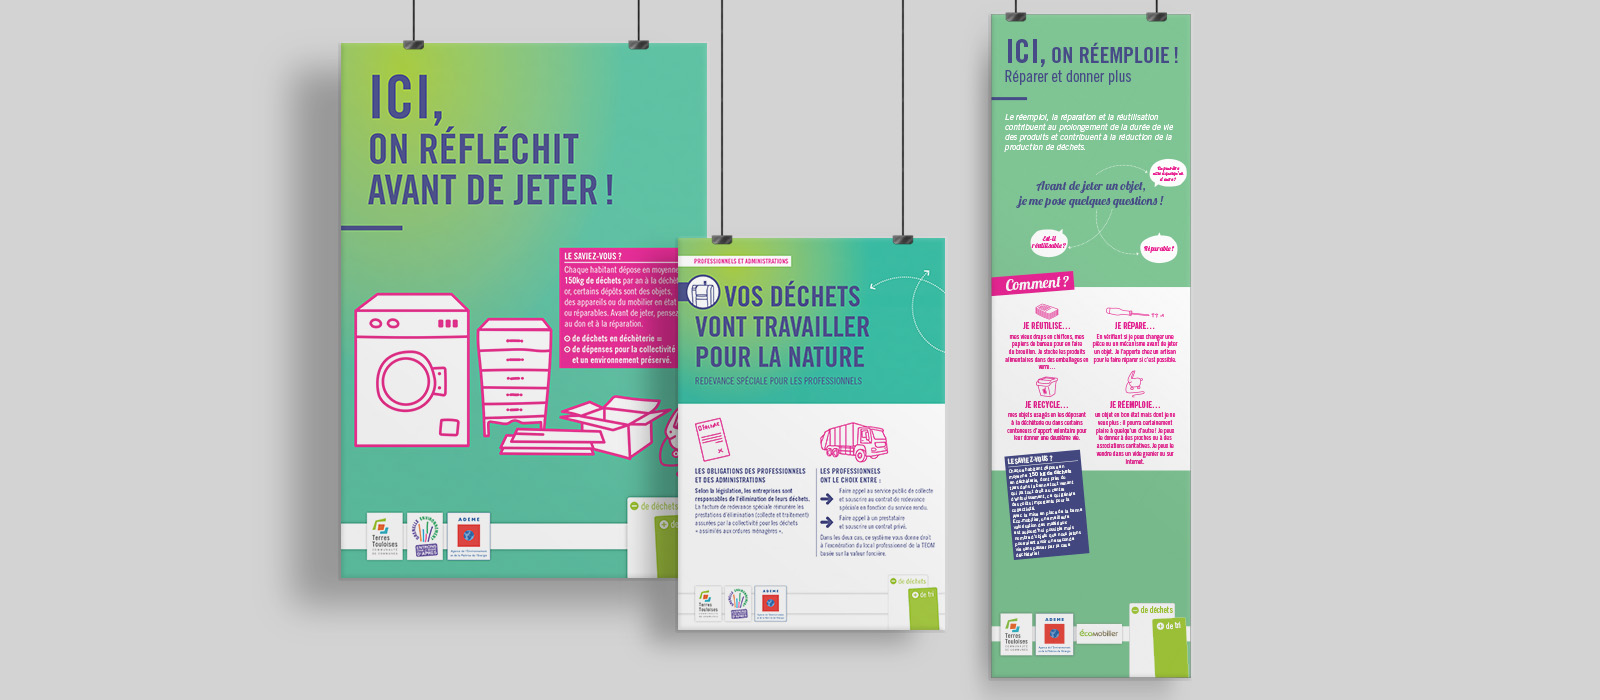 Communauté de communes de Terres Touloises - Campagne 2017-2018 : communication - réduction des déchets - Création graphique - design d’espace et signalétique - édition - transition écologique